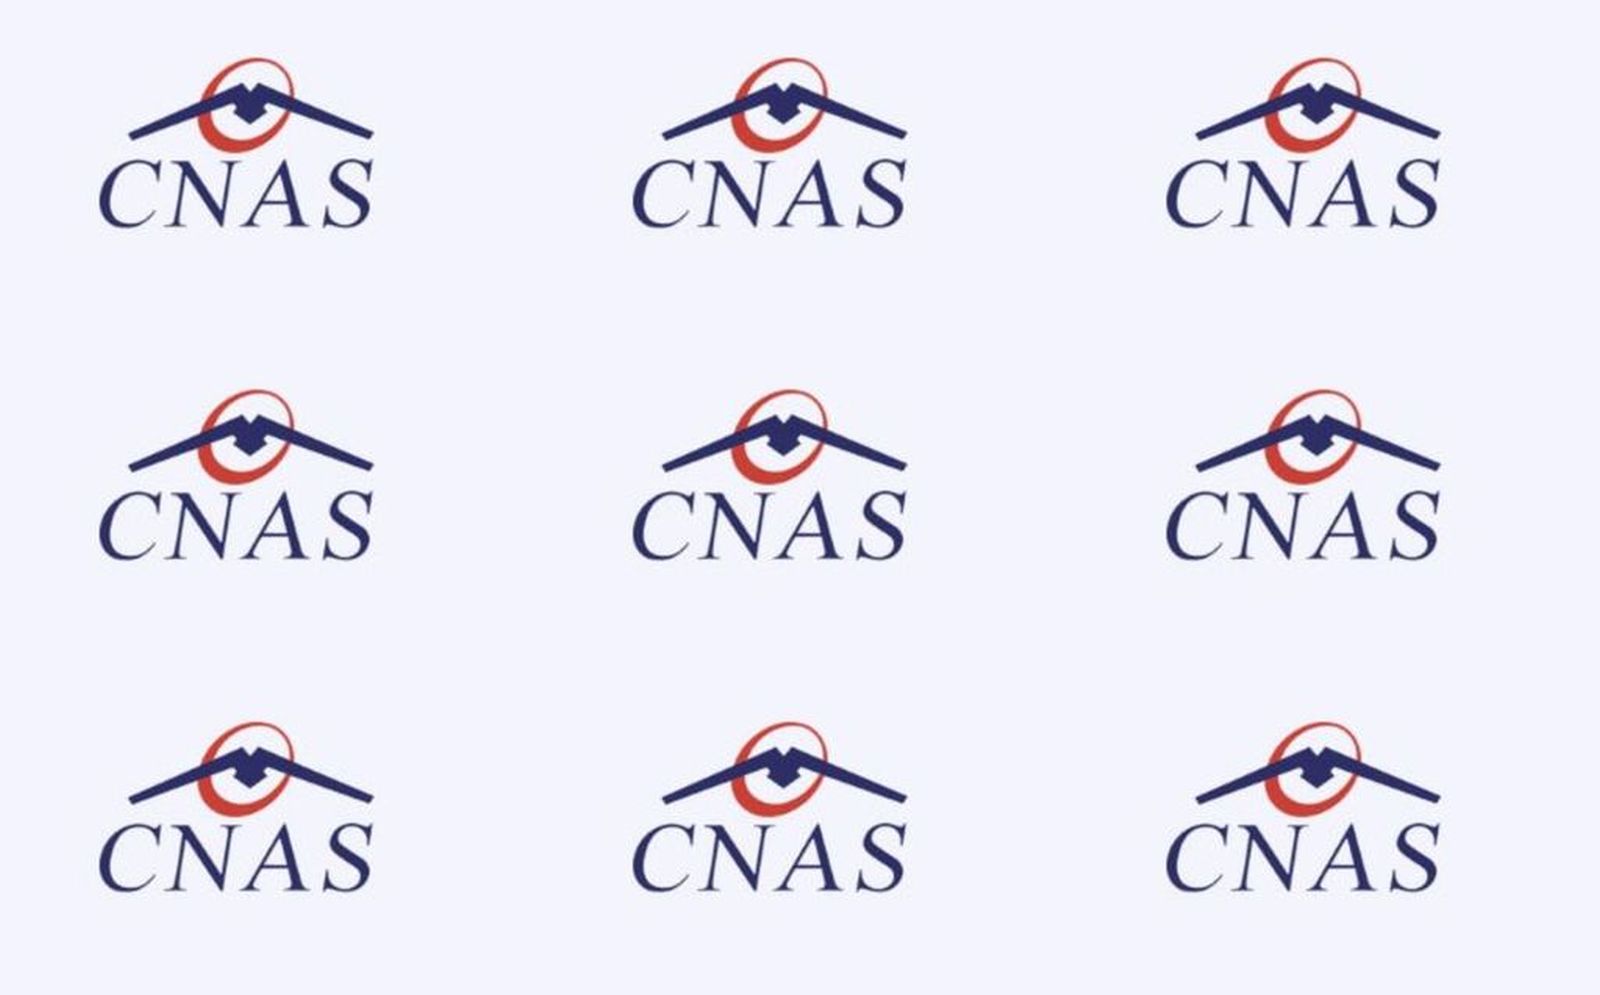 Andrei Baciu lesz a CNAS új elnöke